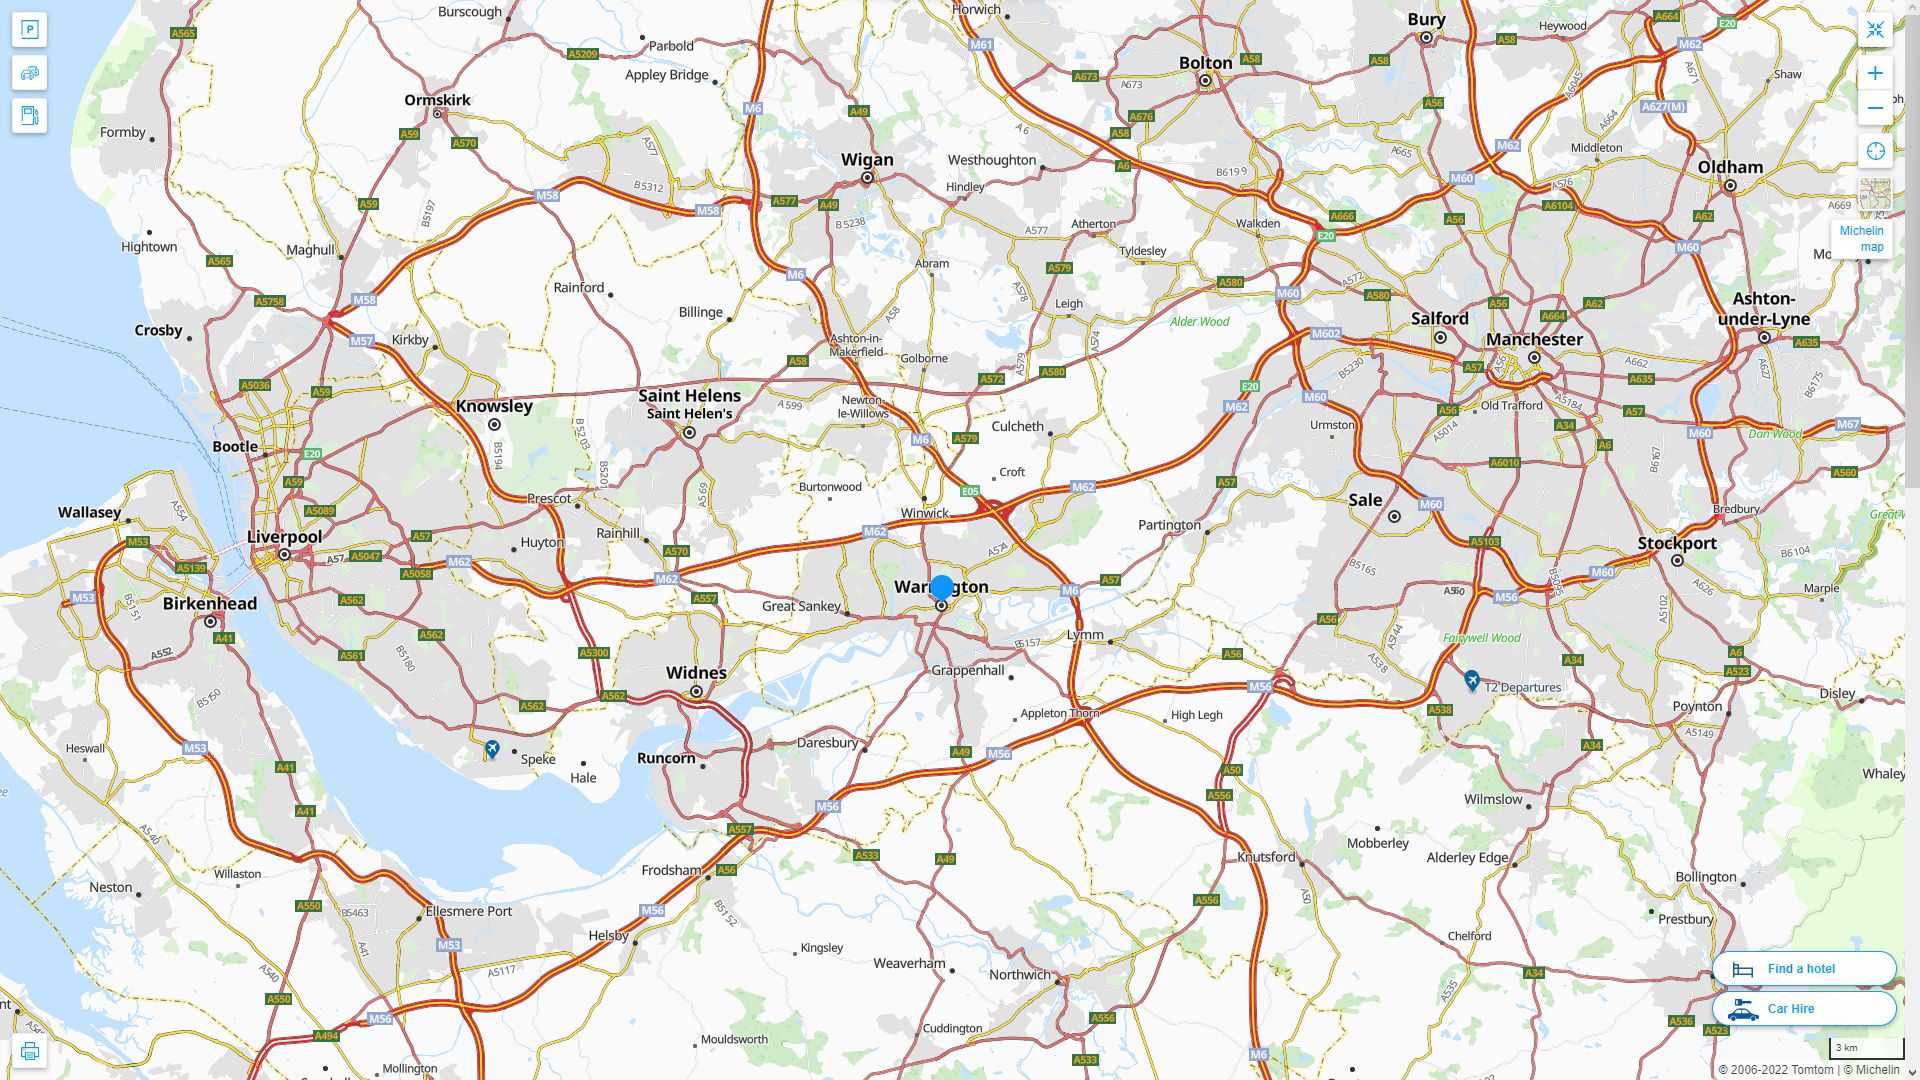 Warrington Royaume Uni Autoroute et carte routiere